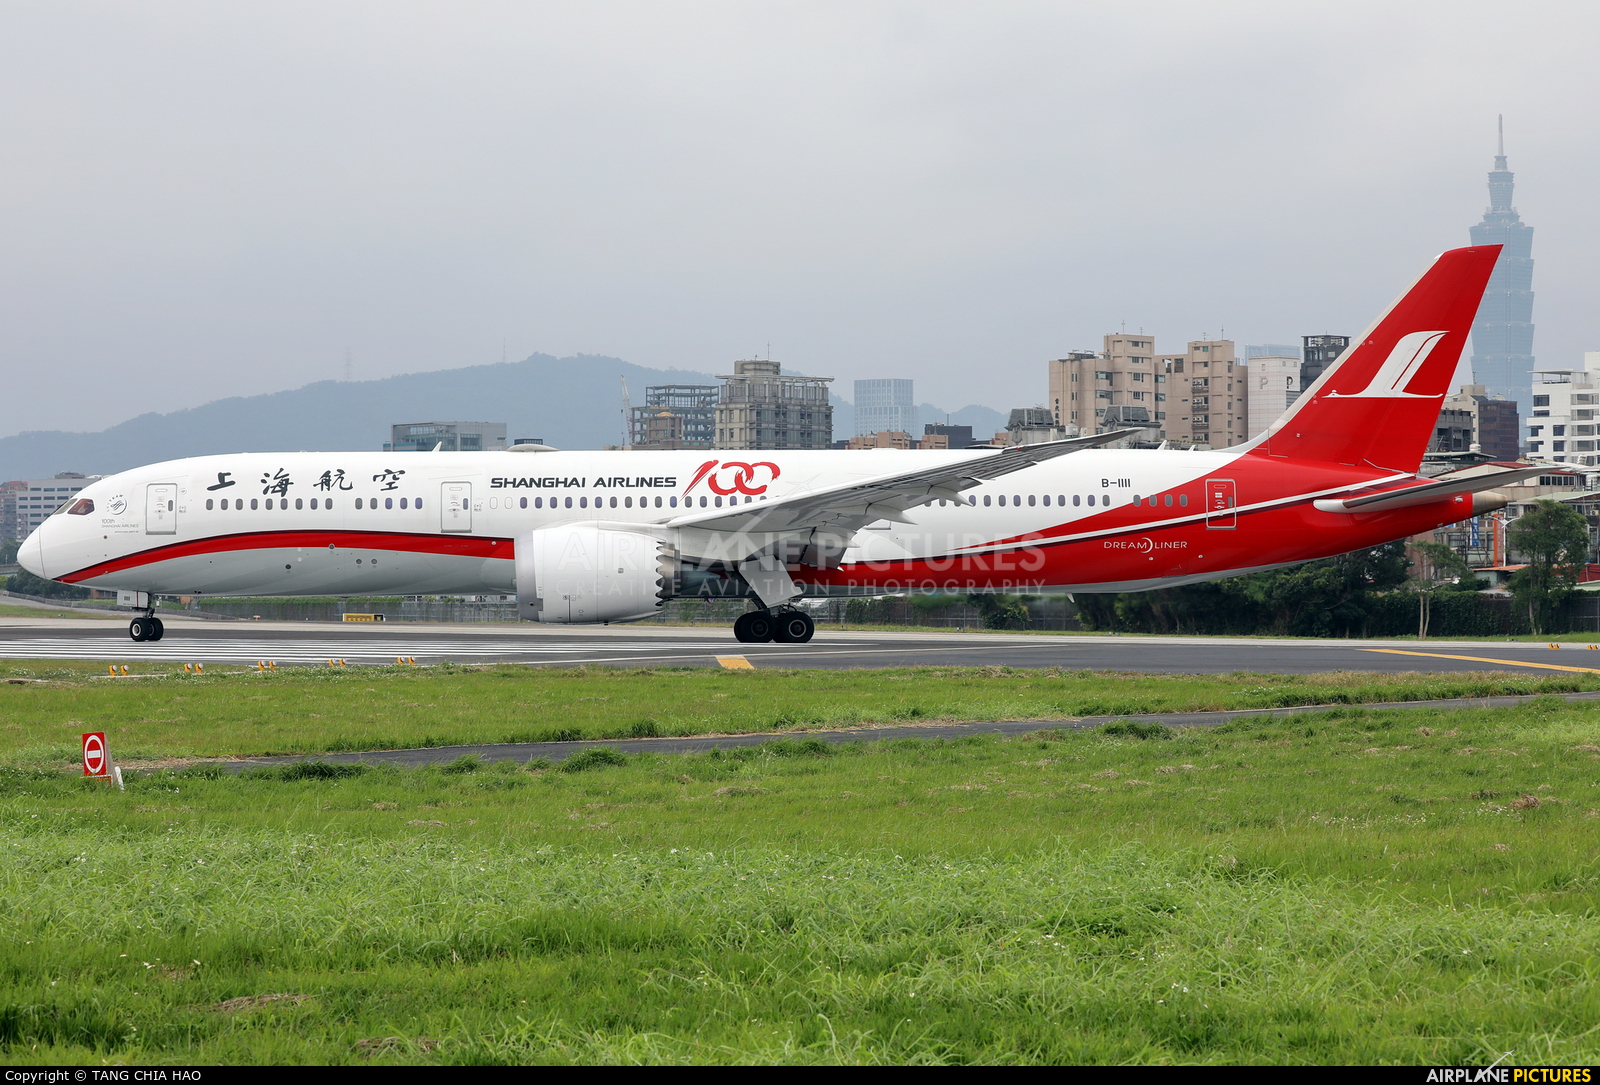 Shanghai Airlines B-1111 aircraft at Taipei Sung Shan/Songshan Airport